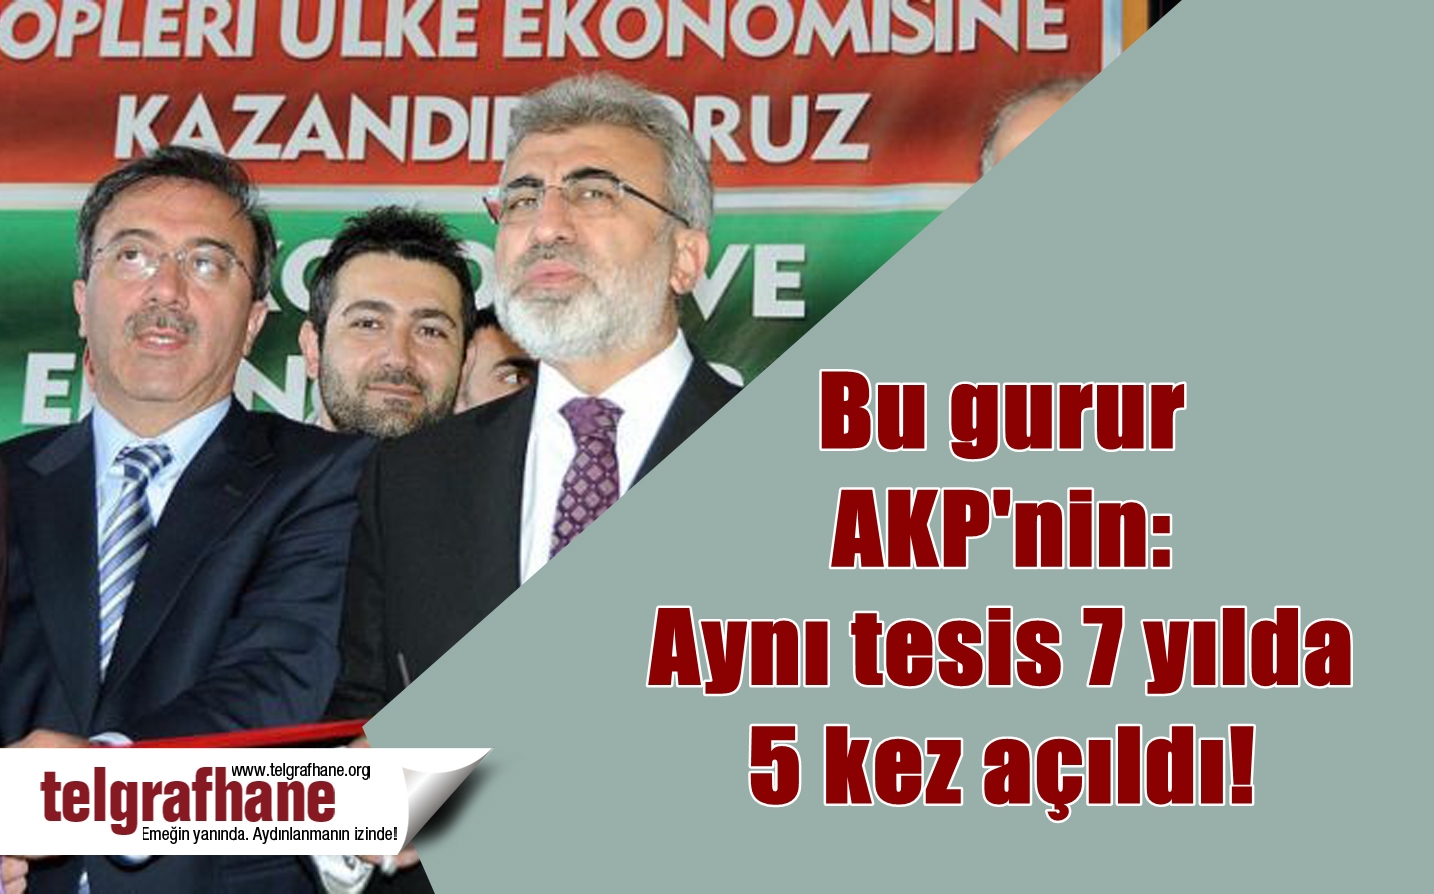 Bu gurur AKP’nin: Aynı tesis 7 yılda 5 kez açıldı!